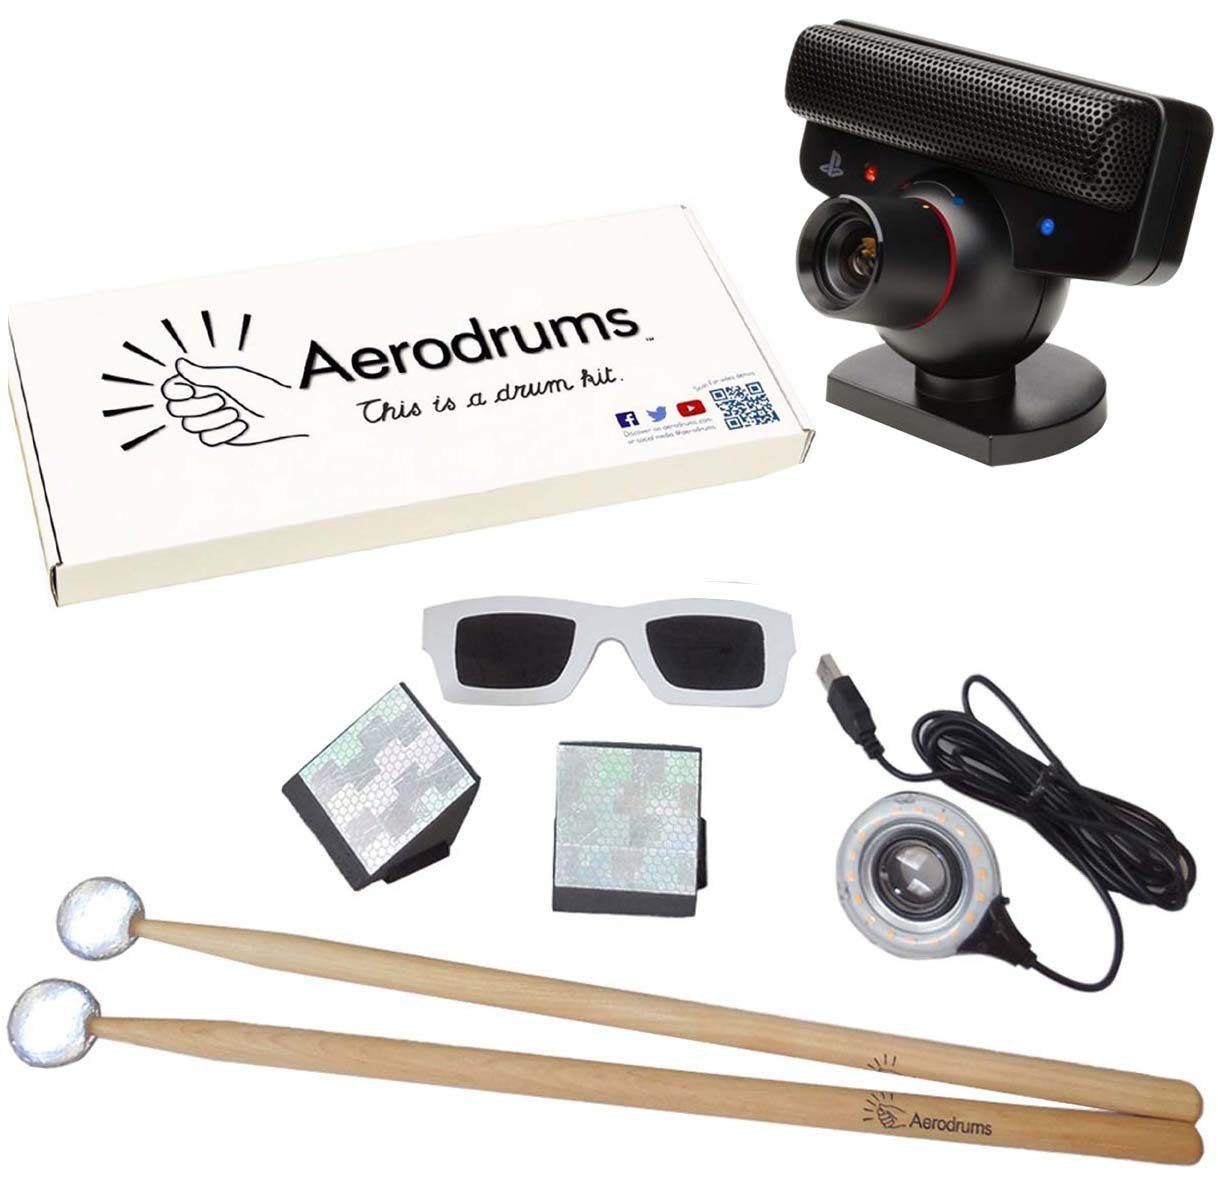 Aerodrums E-Drum virtuelles Schlagzeug mit PS3 Kamera